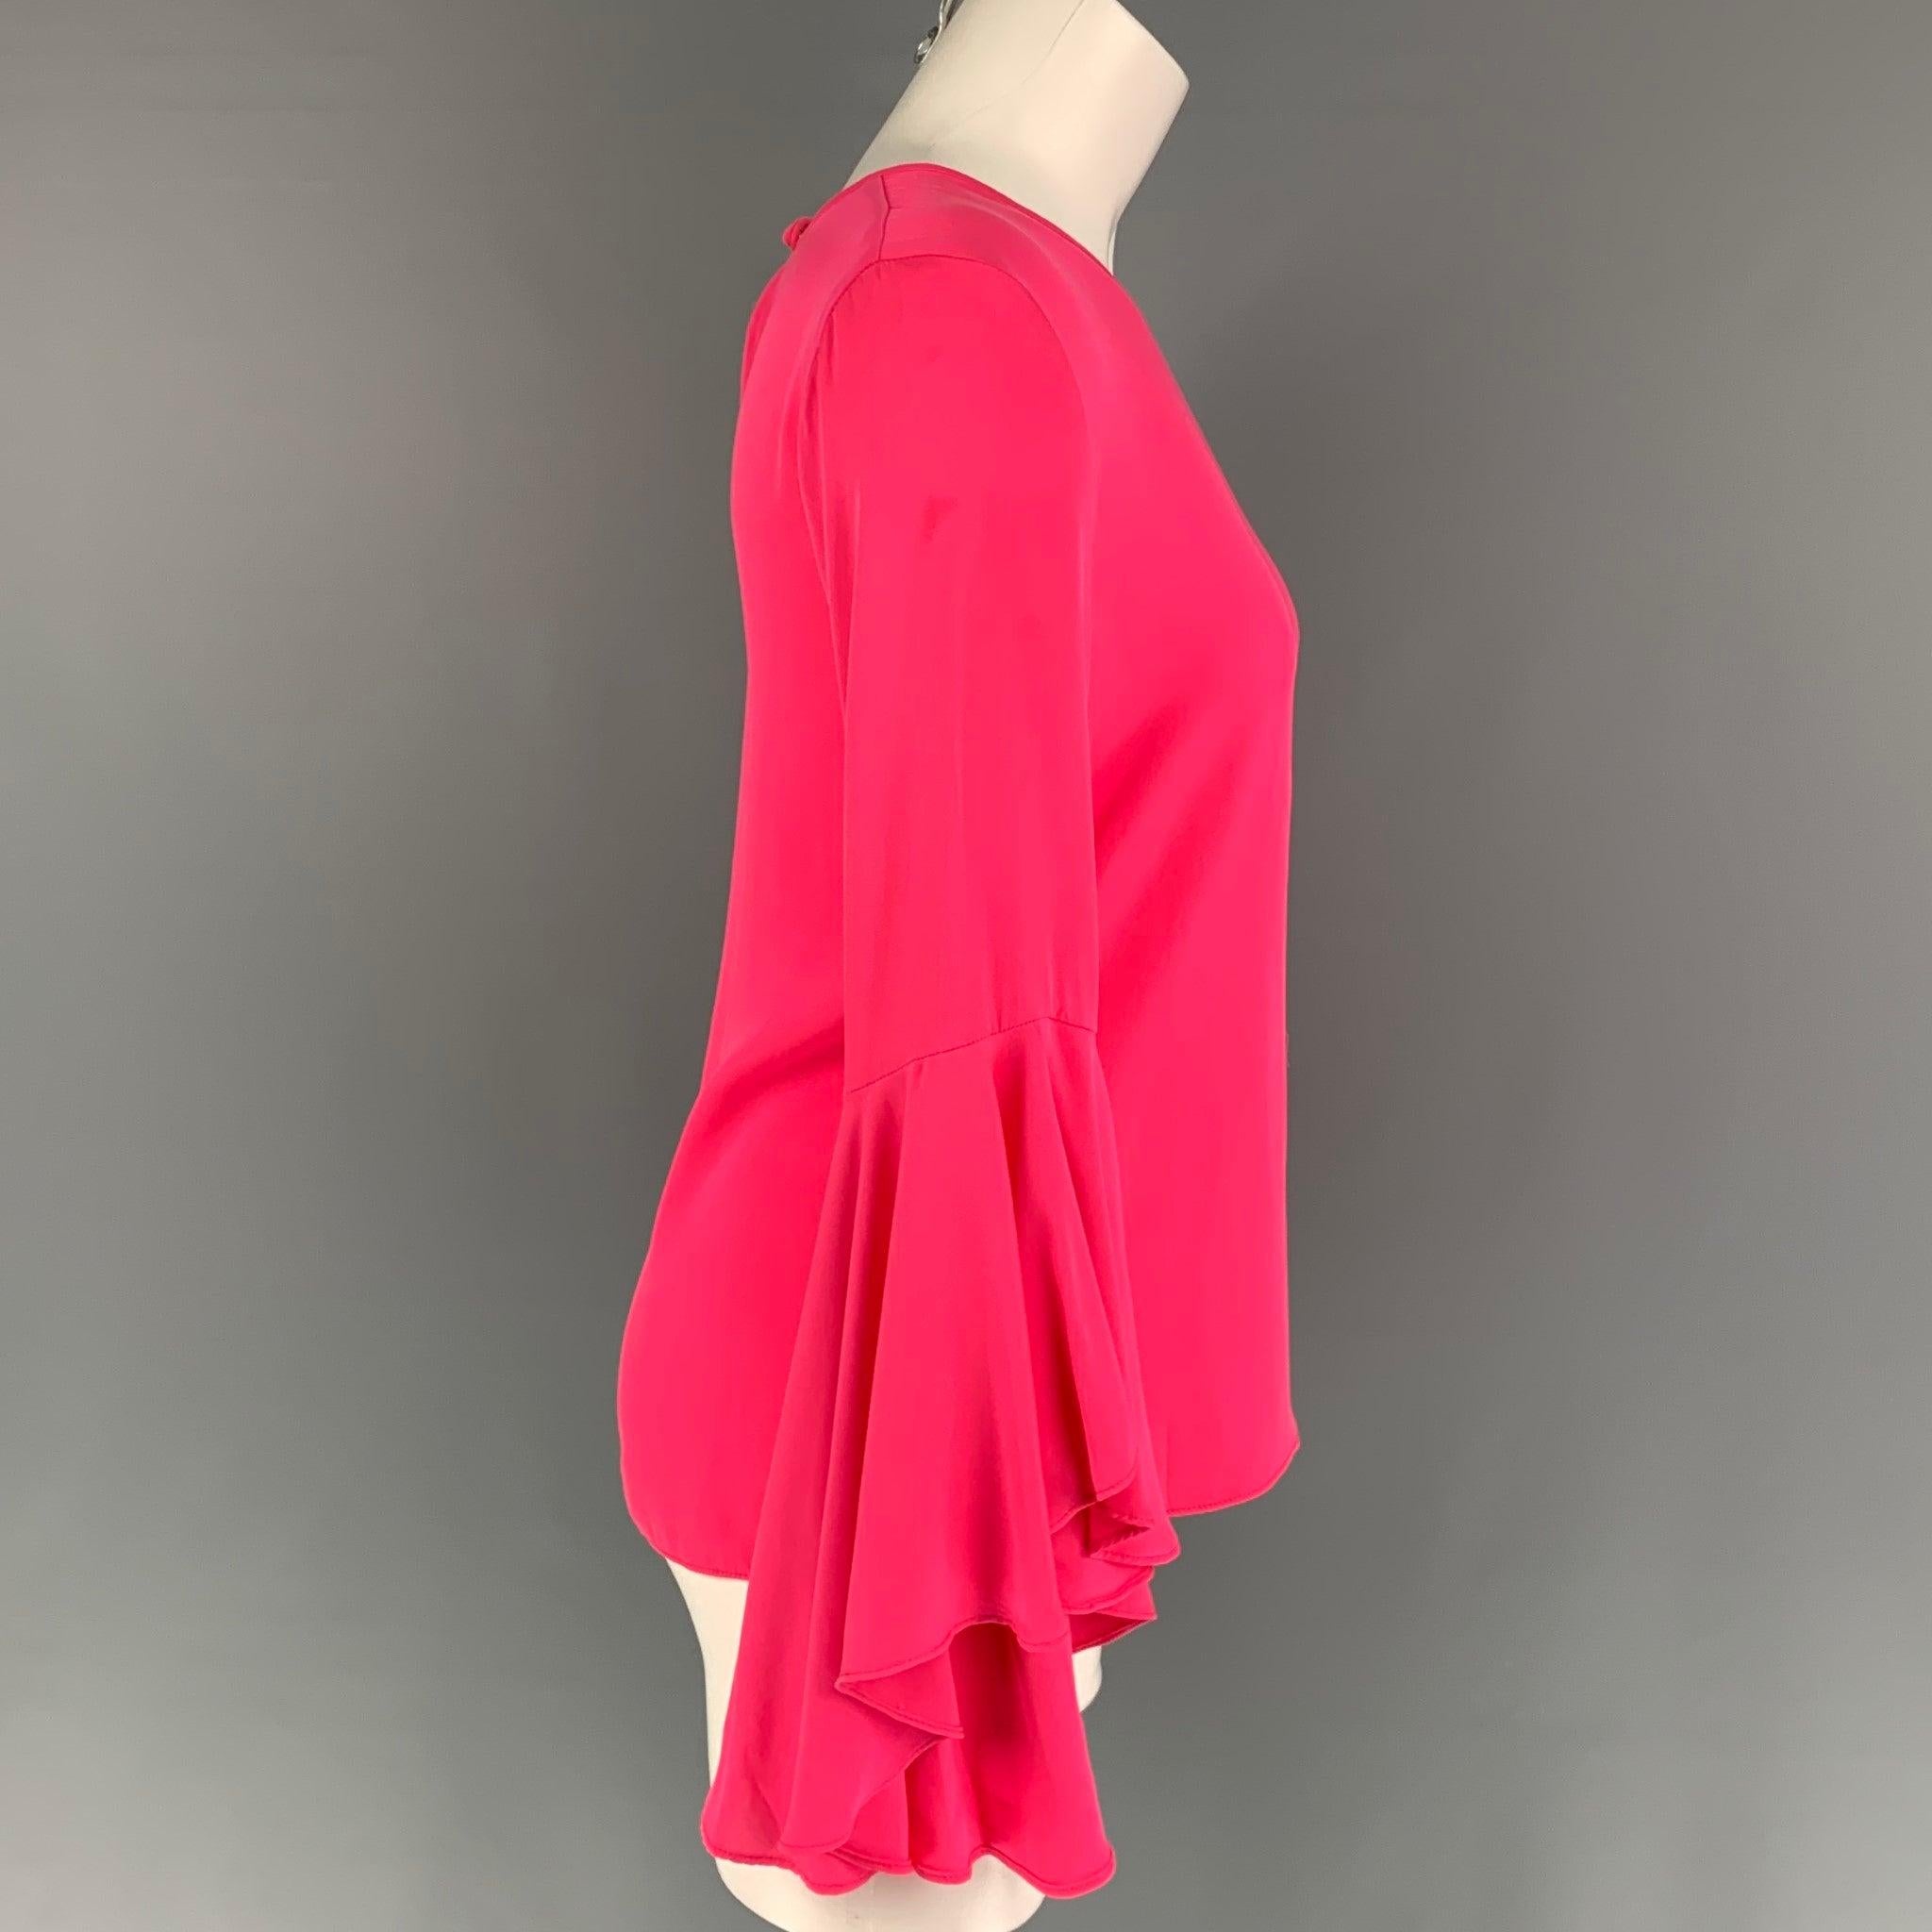 MILLY Bluse aus rosa Seide mit Glockenärmeln, Rundhalsausschnitt und Knopfverschluss hinten. Hergestellt in den USA. Sehr gut
Gebrauchtes Zustand. Leichte Abnutzung.  

Markiert:   2 

Abmessungen: 
 
Schultern: 15 Zoll  Oberweite: 34 Zoll 
 Ärmel: